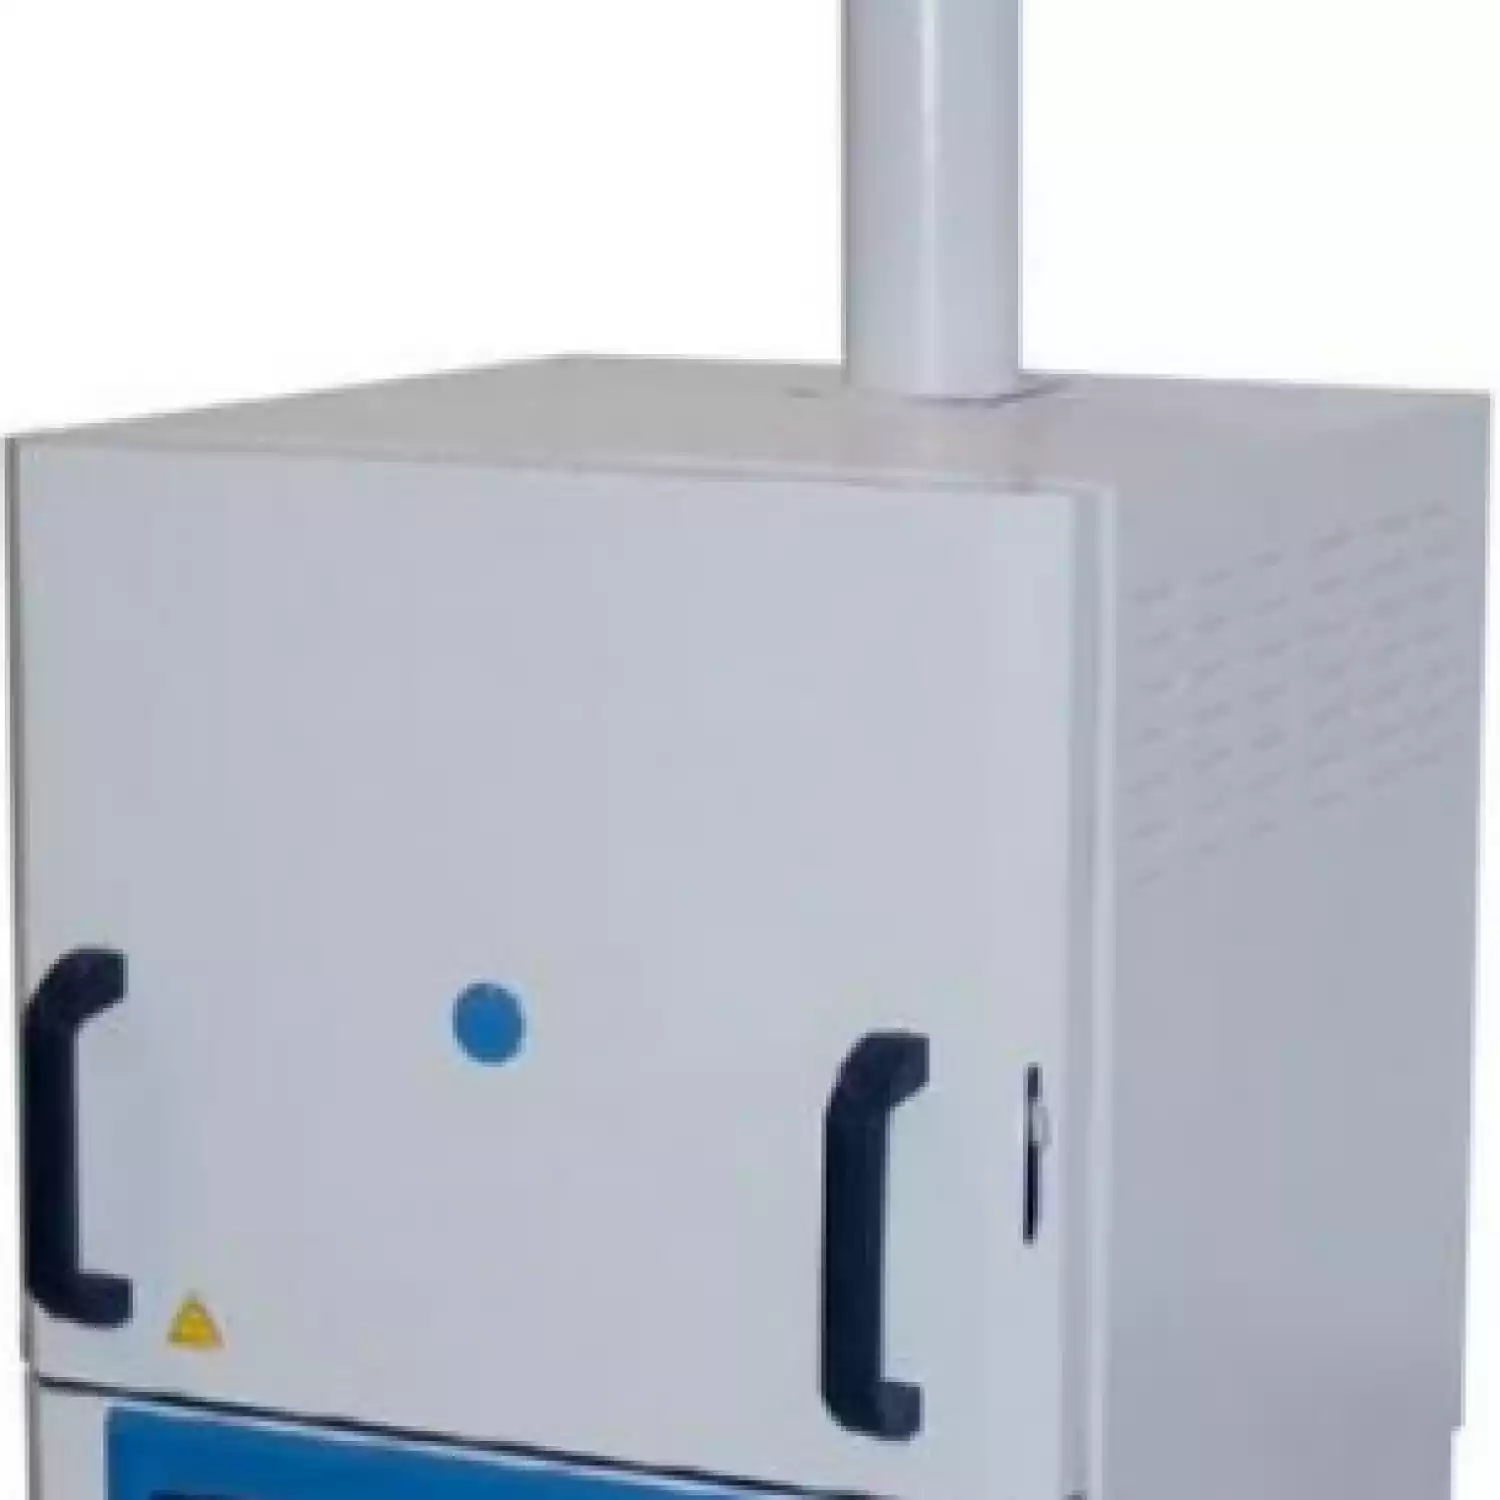 Муфельная печь LF-5/11-V1 (терморегулятор цифровой; 5 л; Т до +1100 °С) - 1